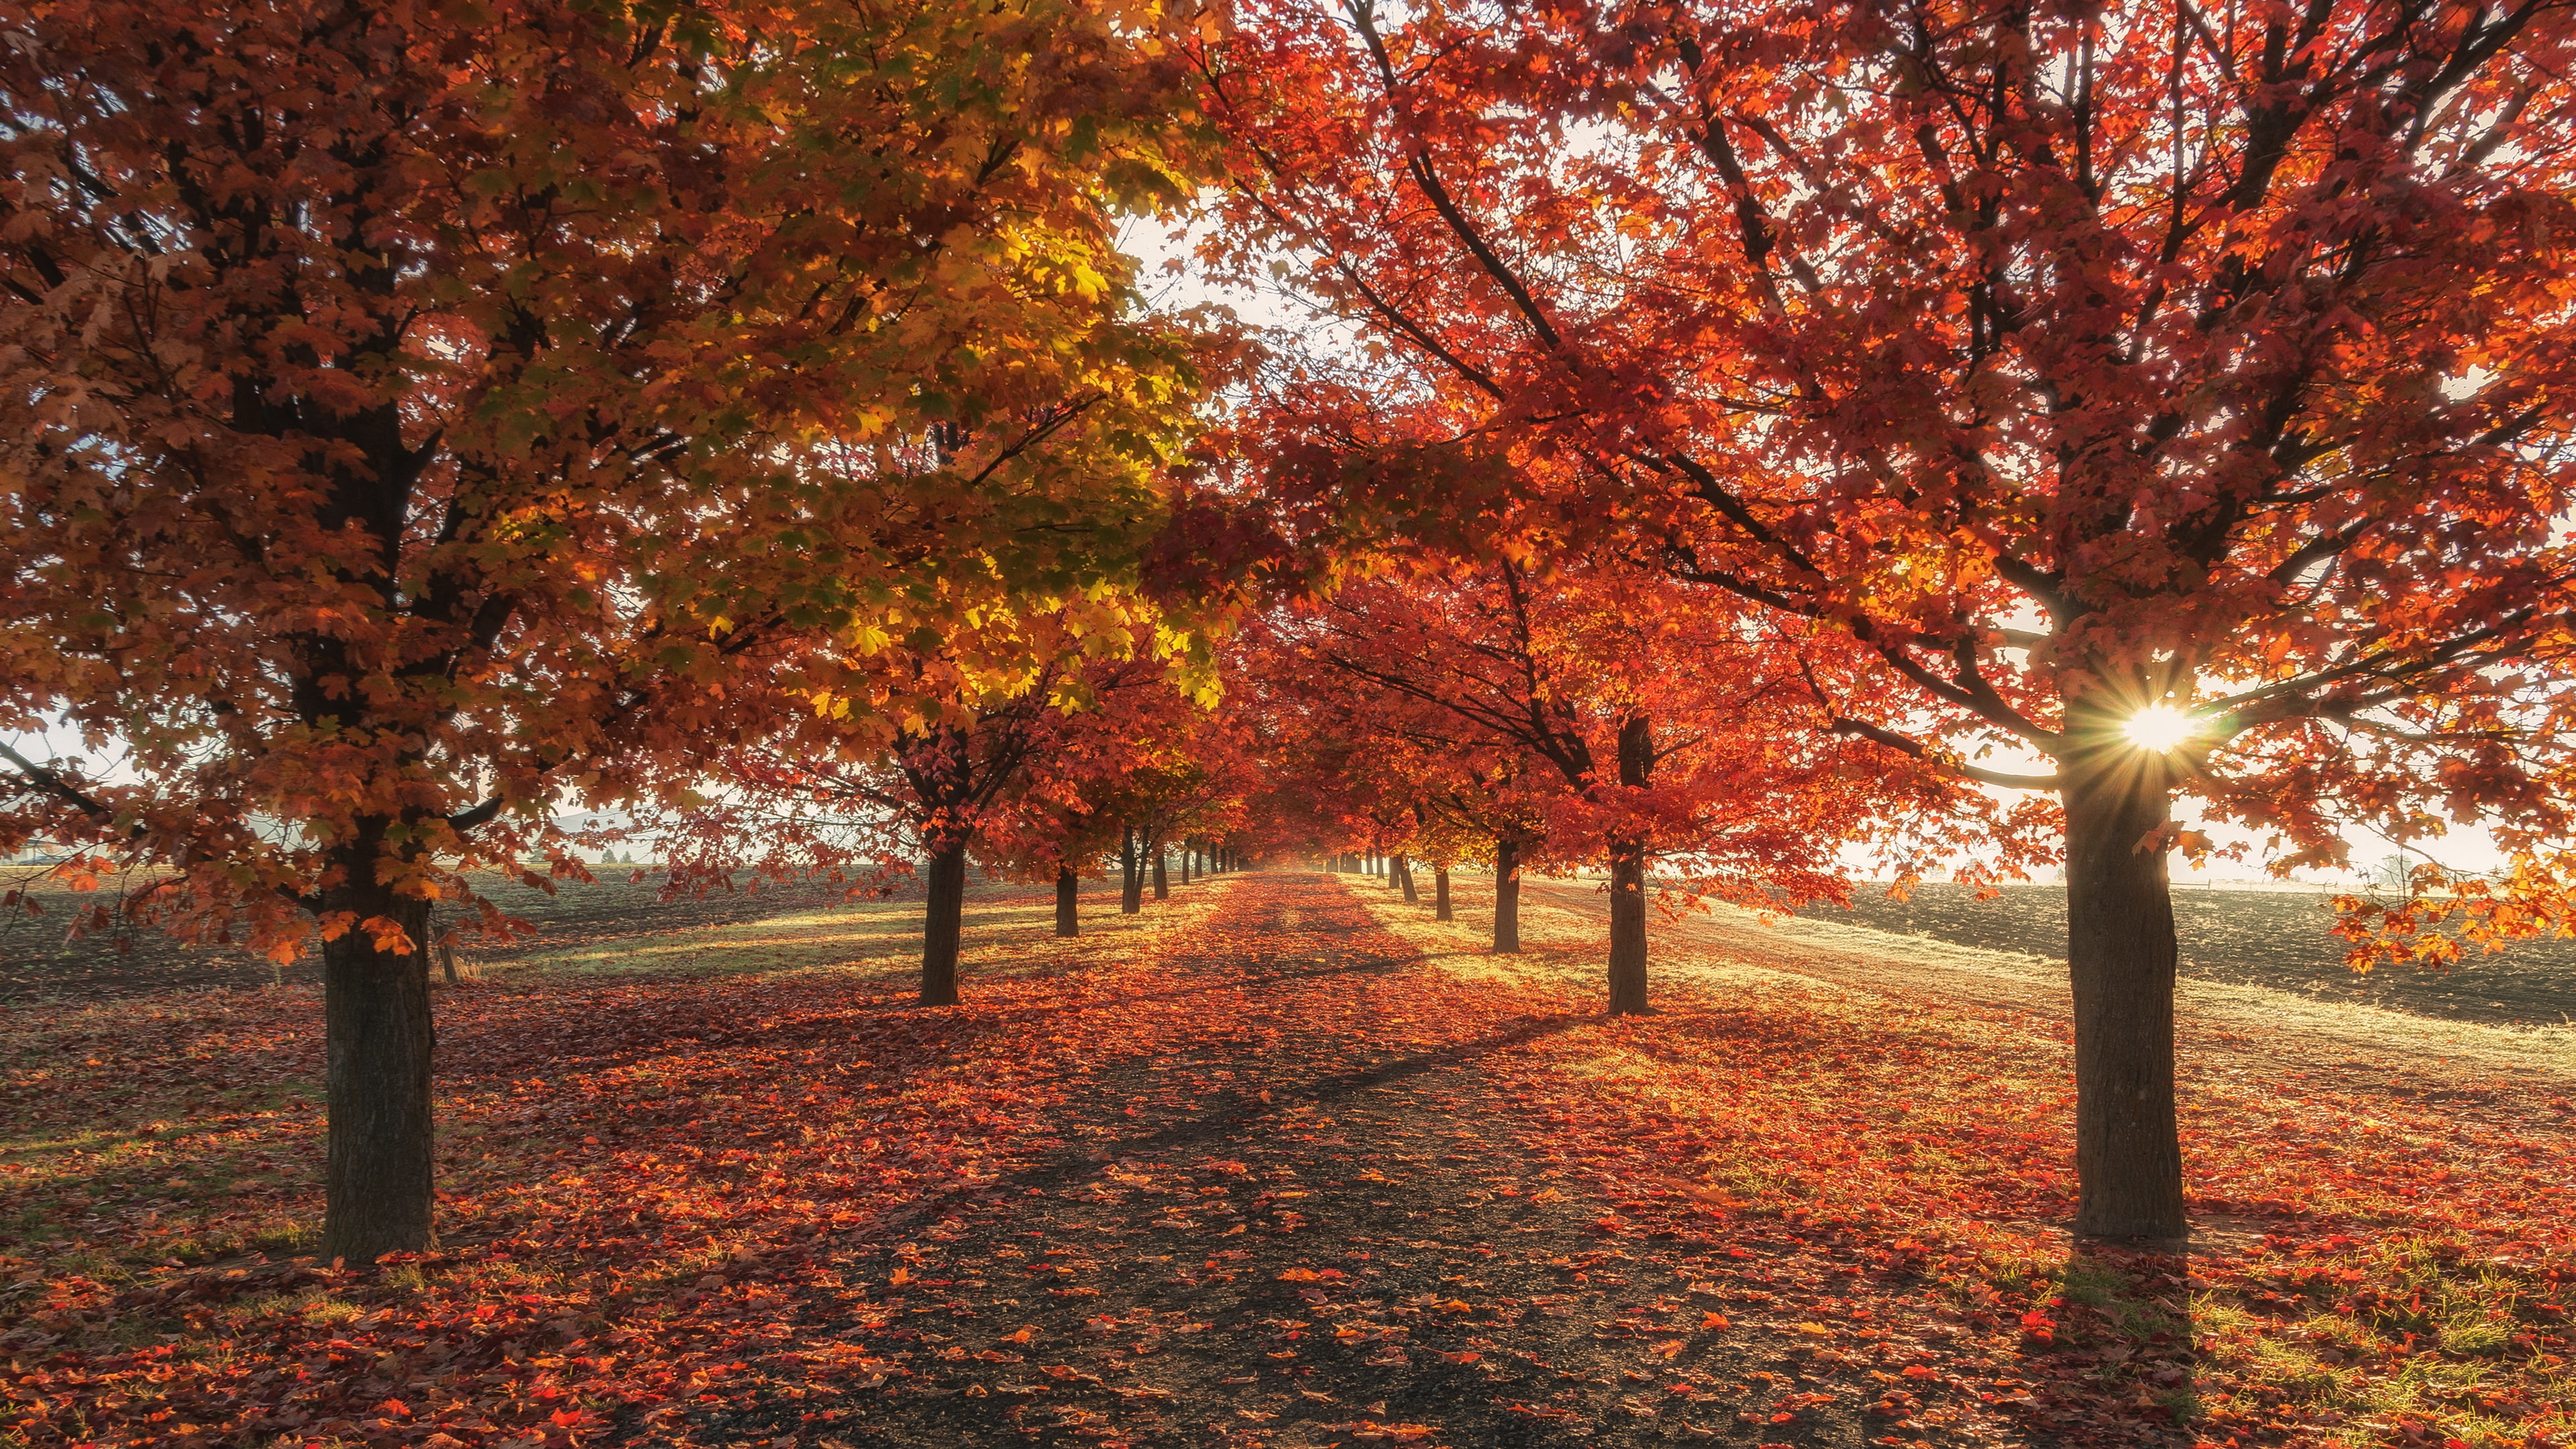 red leaves, tree lane, autumn, autumn landscape, autumn colors